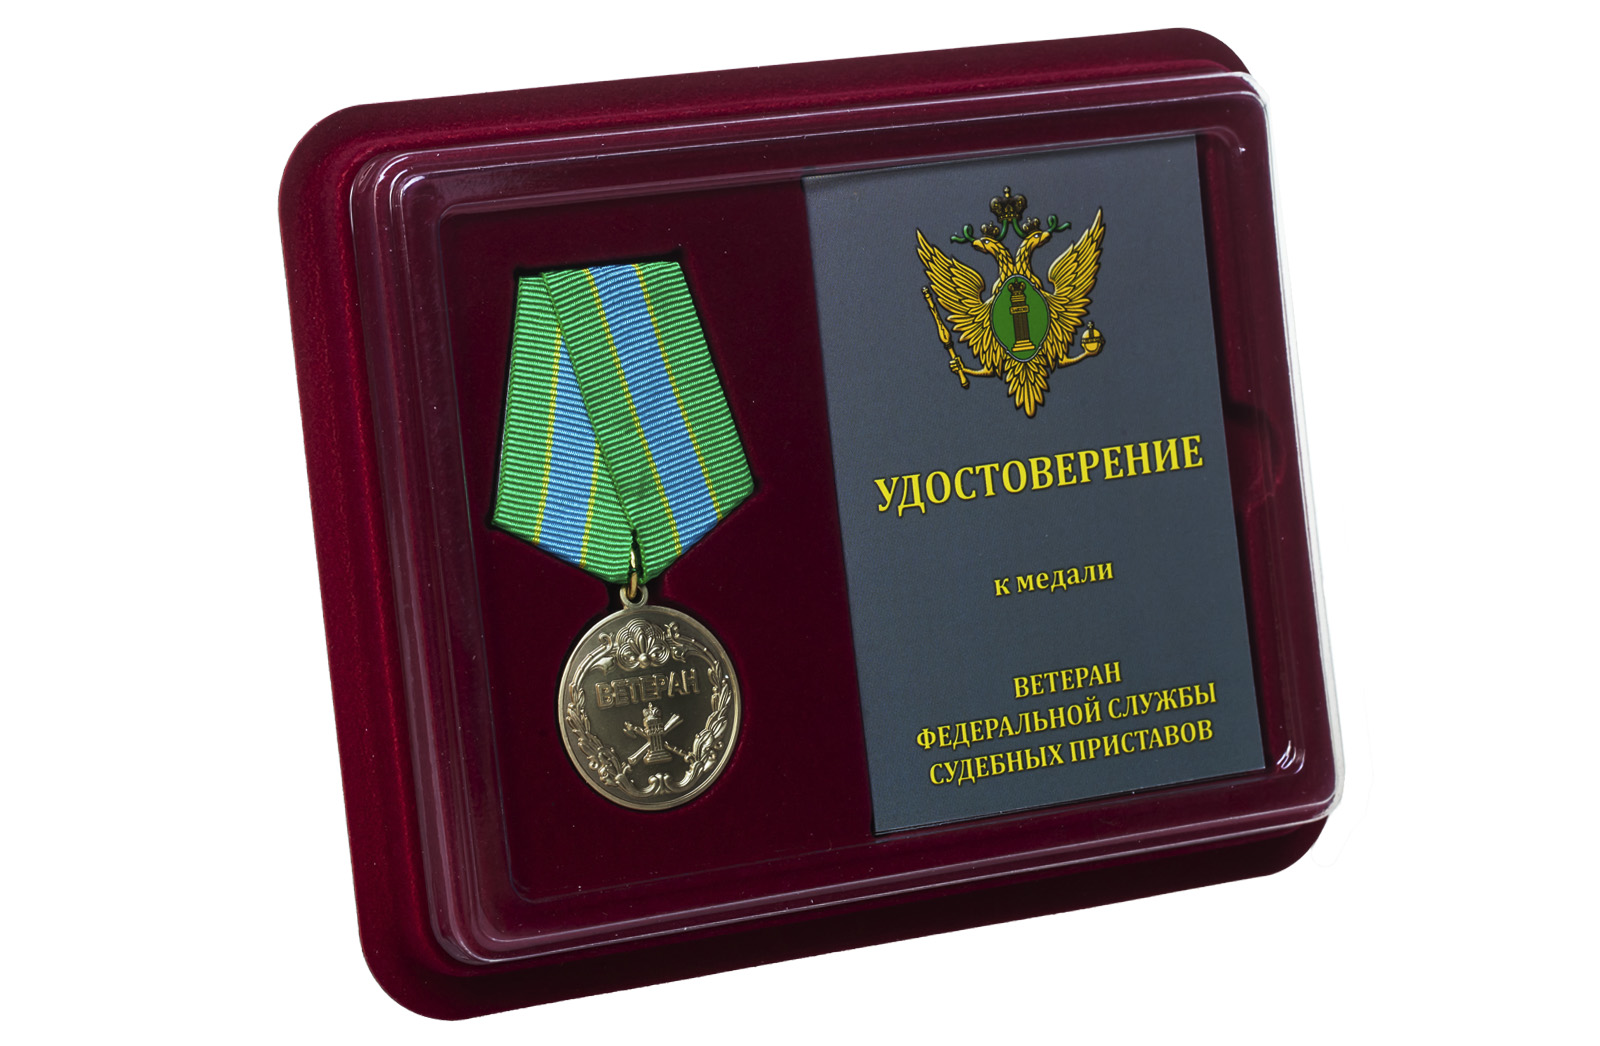 Купить медаль Ветеран Федеральной службы судебных приставов онлайн с доставкой